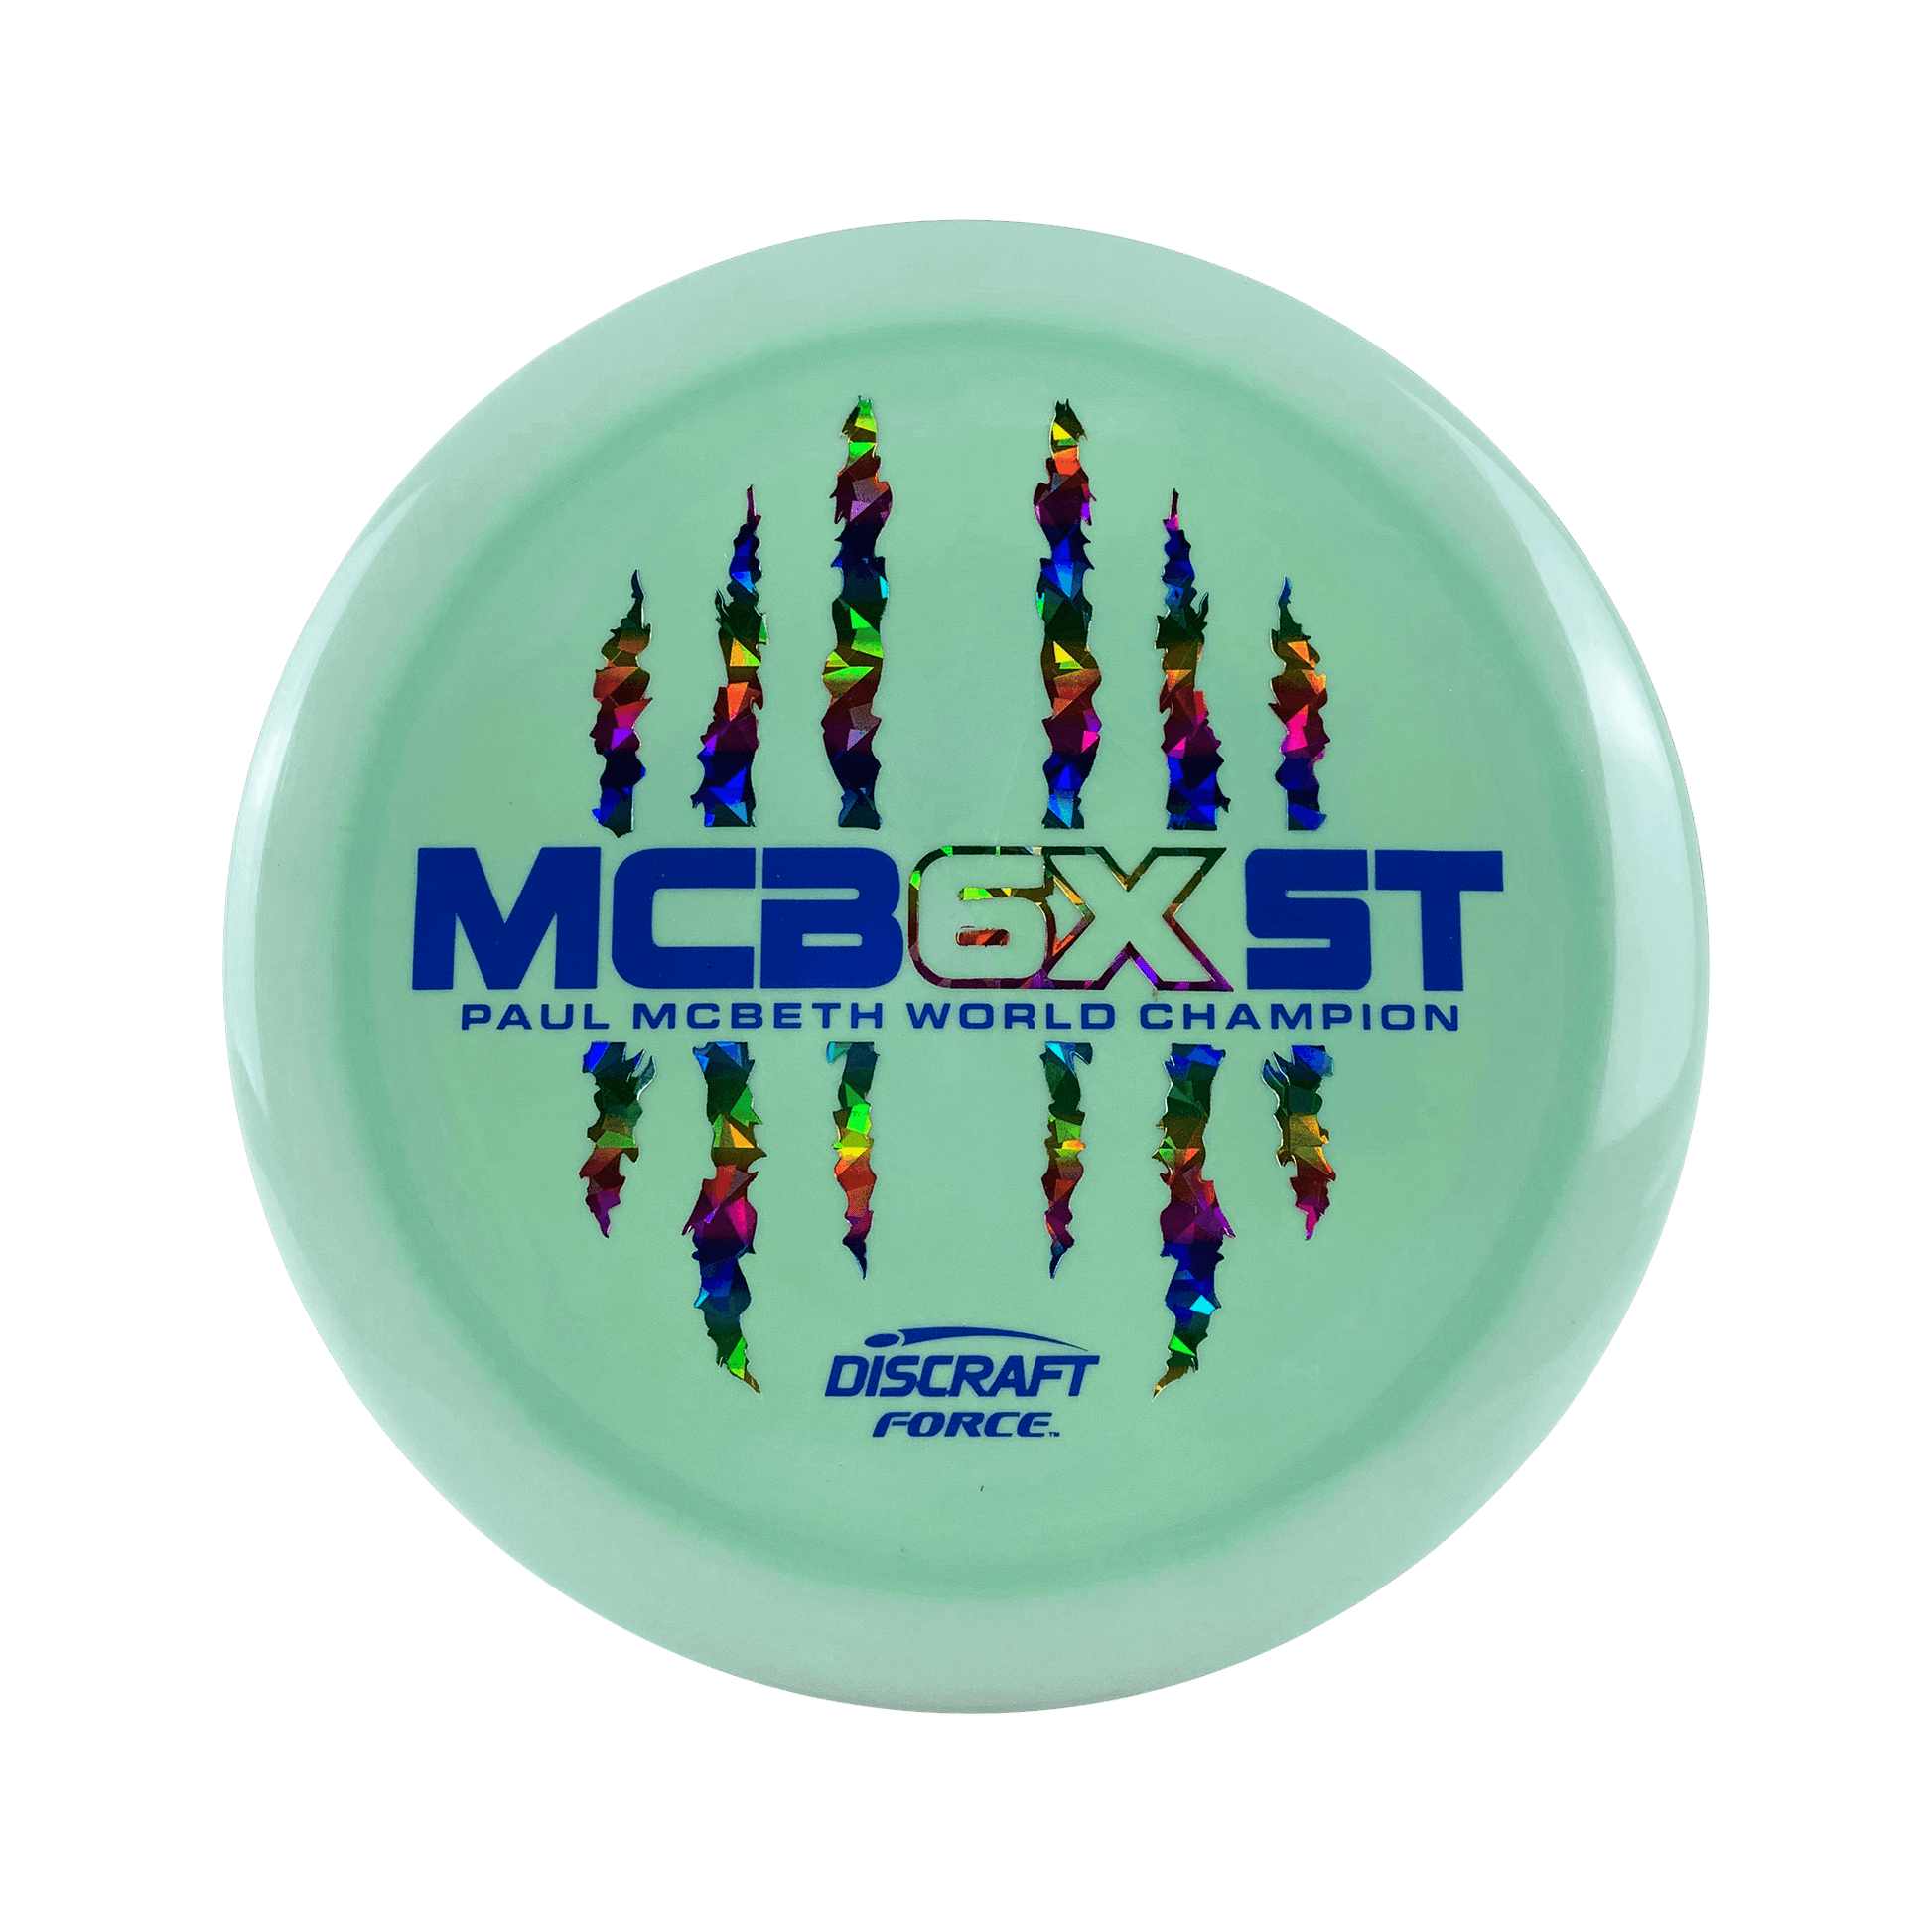 ESP Force - Paul McBeth 6x Claw Disc Discraft mint 173 